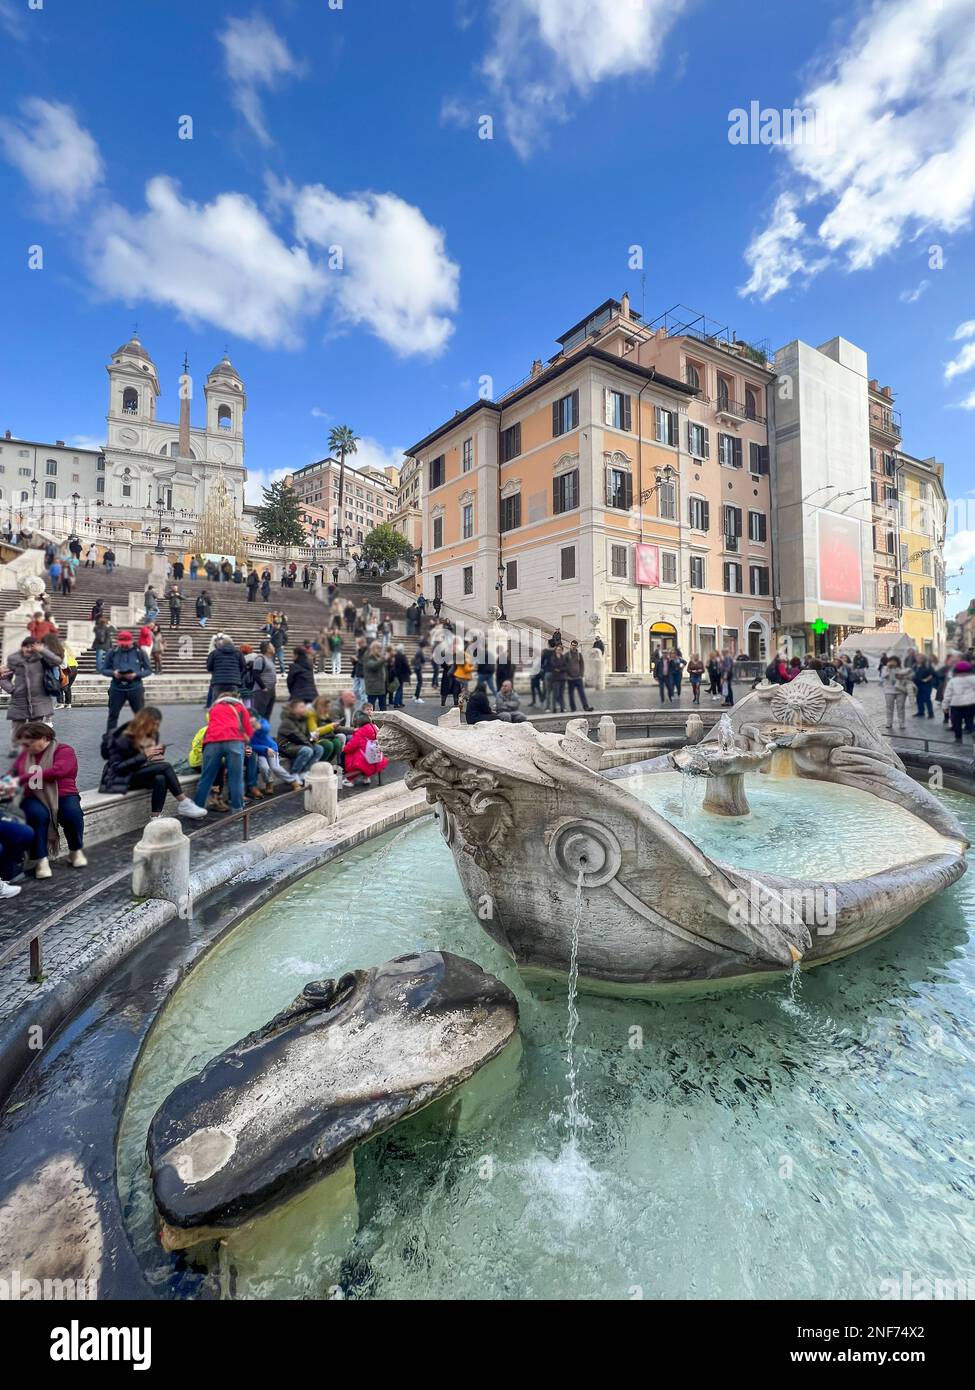 Fontana della Barca conosciuta come Fontana della Barcaccia in italiano con scalinata di Piazza di Spagna a Roma o Piazza di Spagna a Roma. Foto Stock